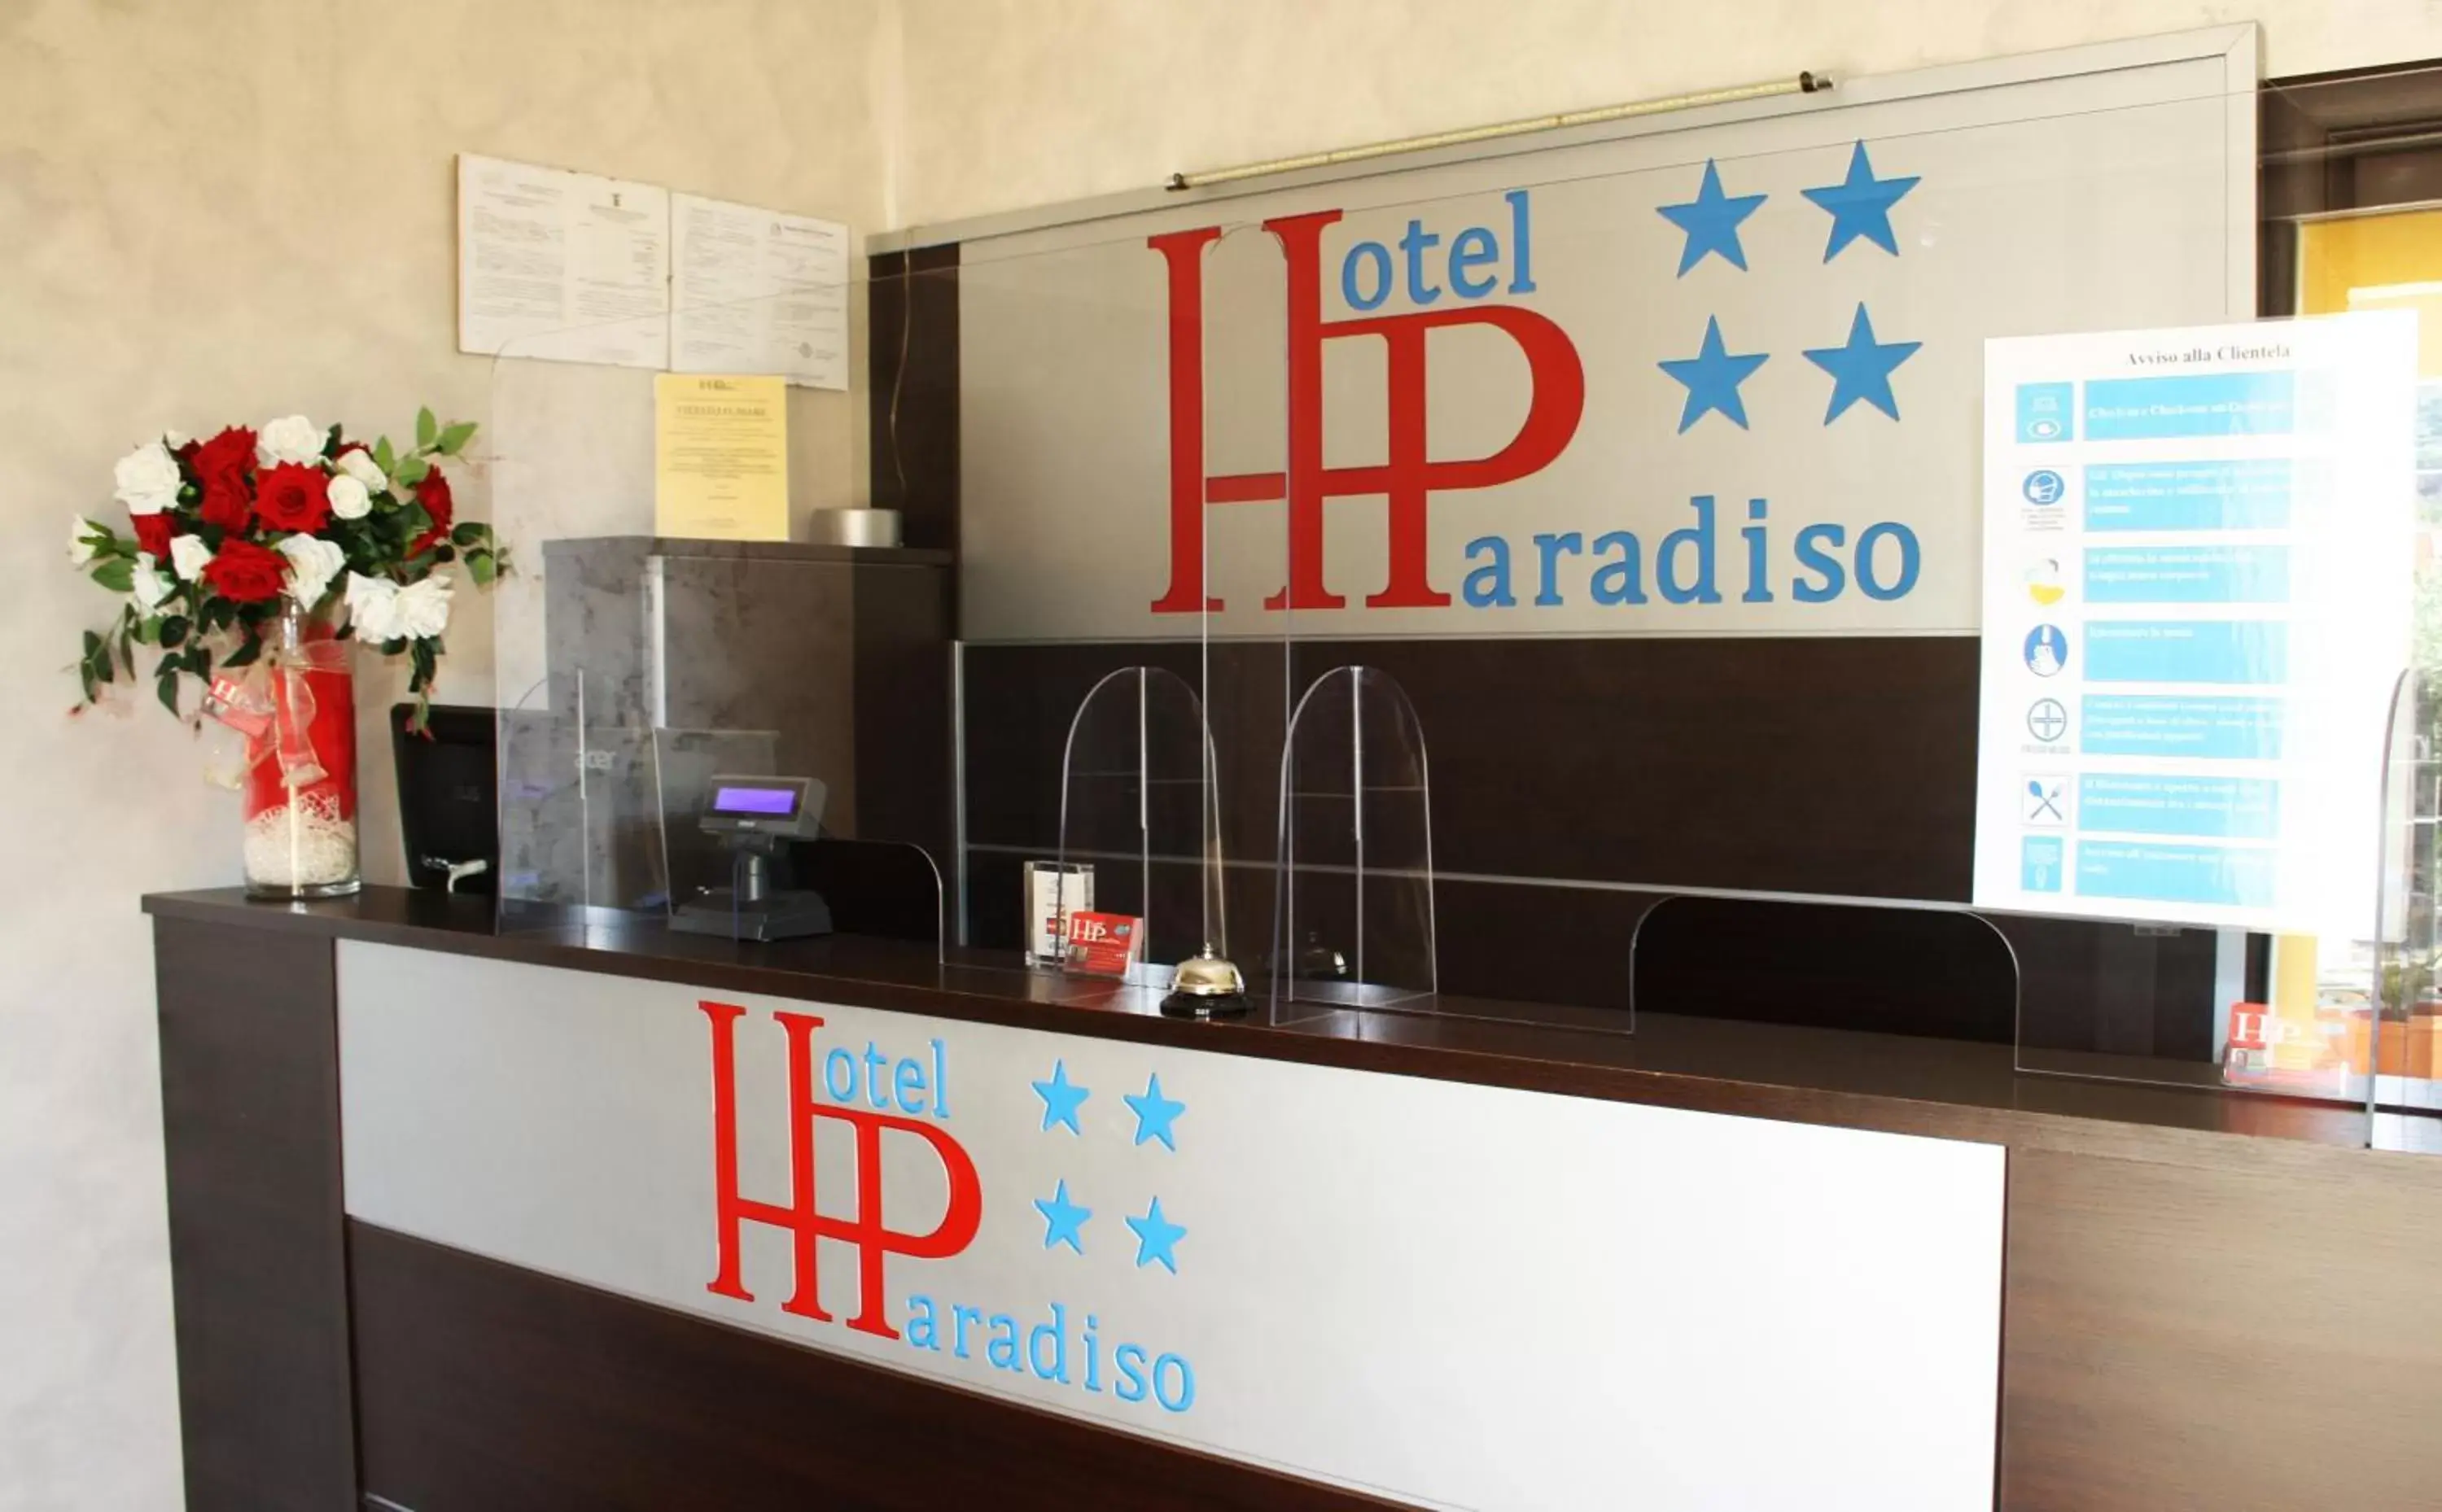 Lobby or reception, Lobby/Reception in Hotel Paradiso